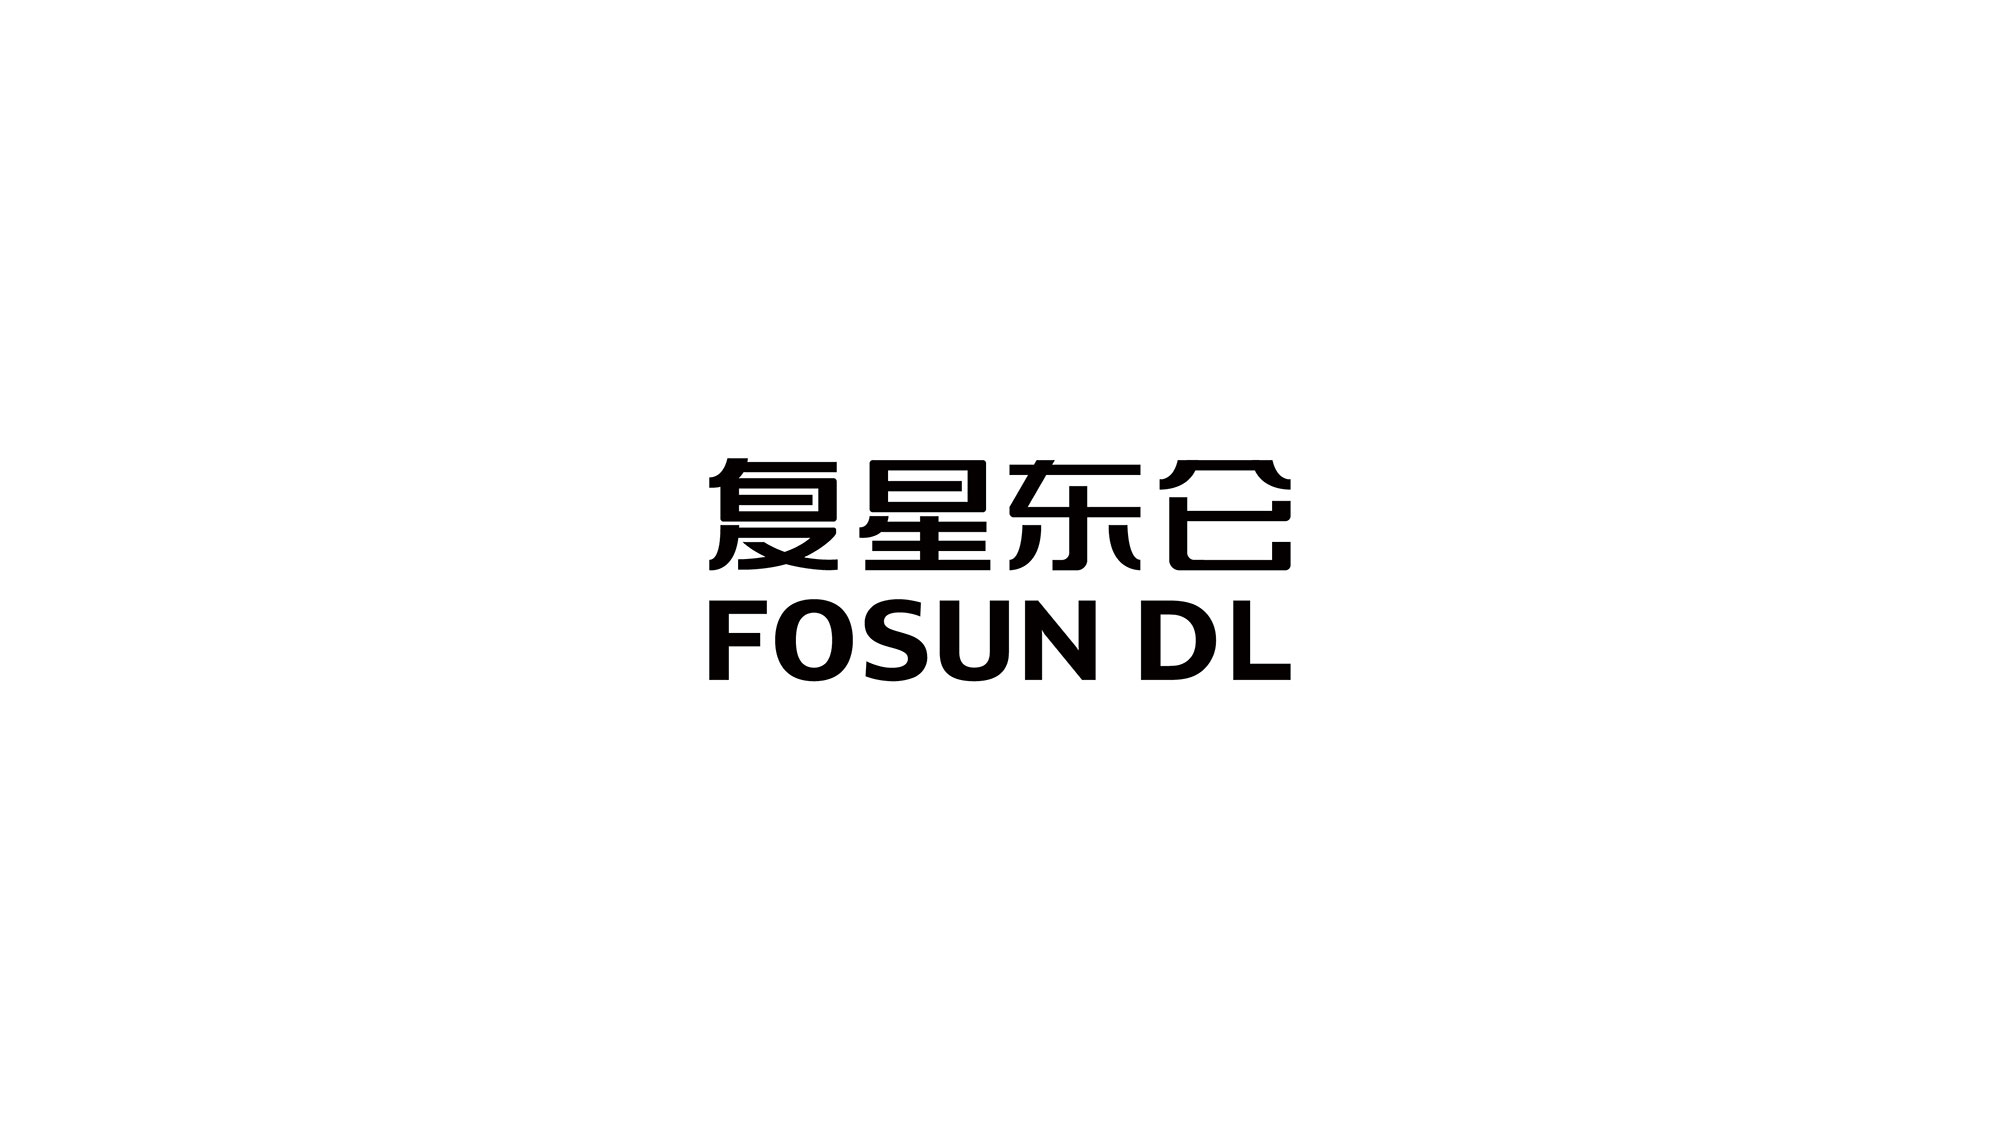 复星东仑最新logo最终-03.jpg